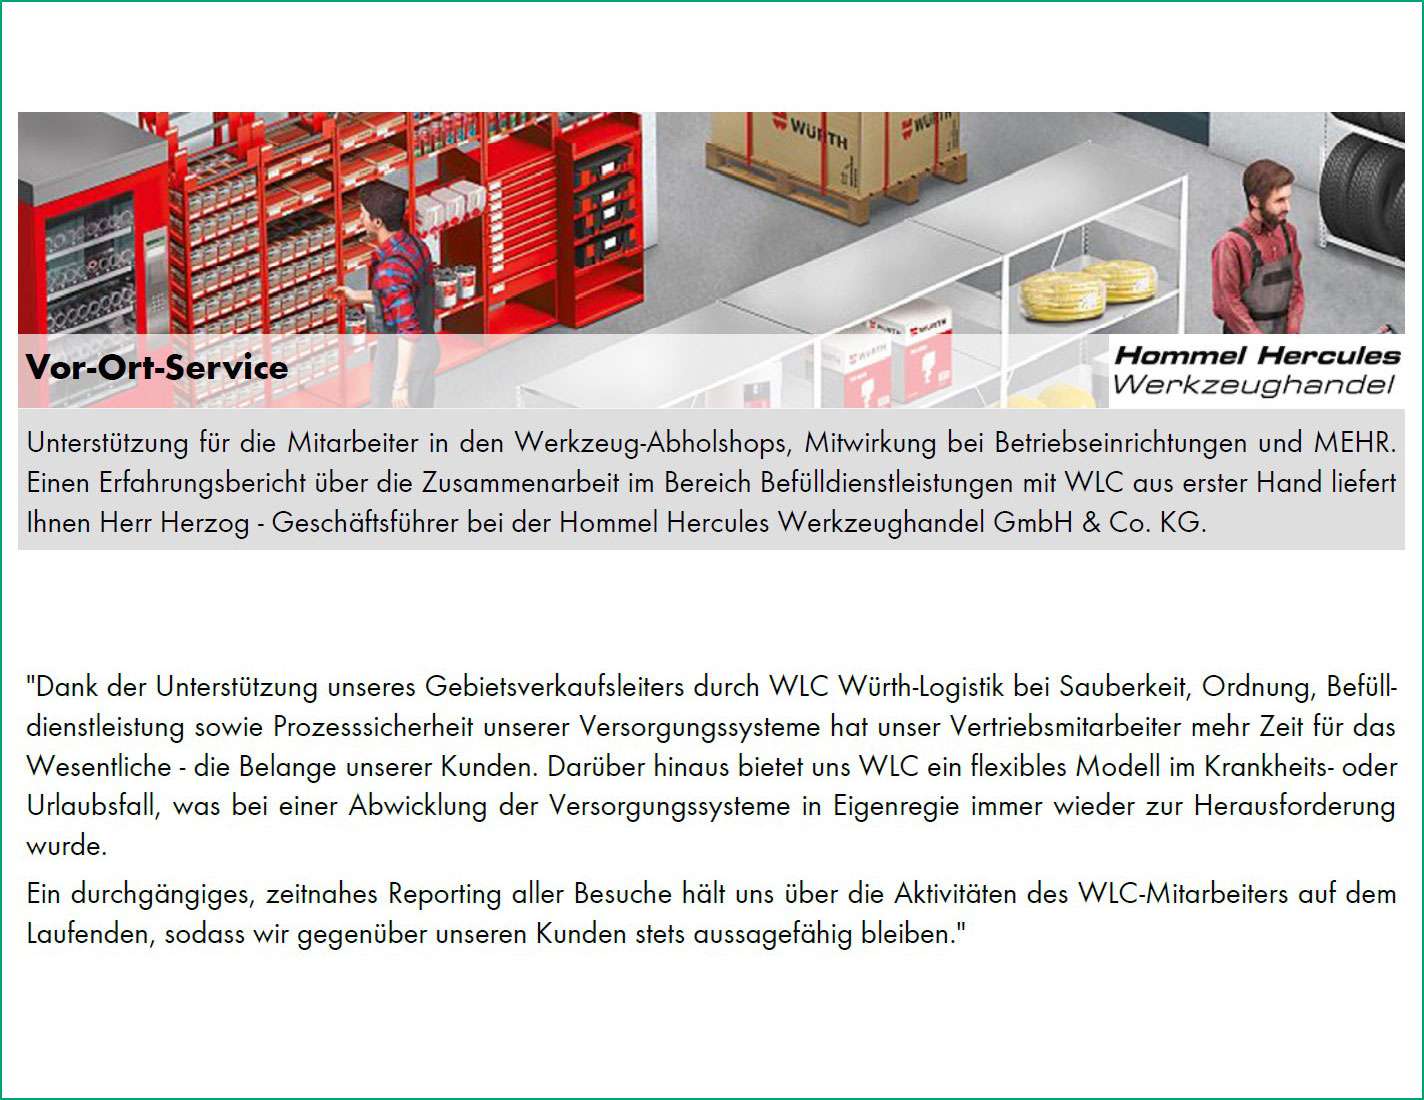 Vor-Ort-Service von Hommel Hercules Werkzeughandel GmbH & Co. KG